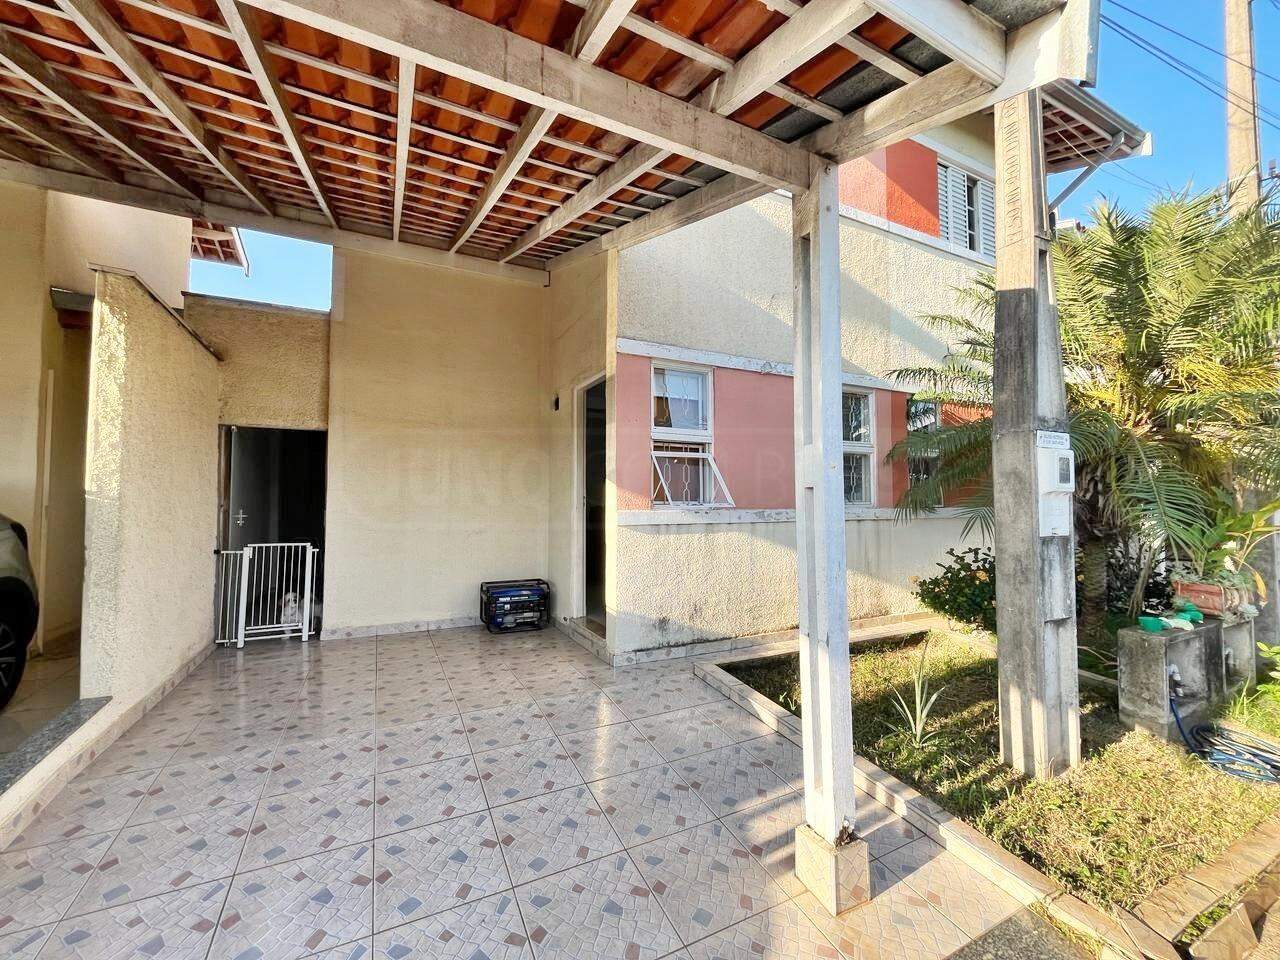 Casa à venda, 2 quartos, 1 vaga, no bairro Jardim Três Marias em Piracicaba - SP